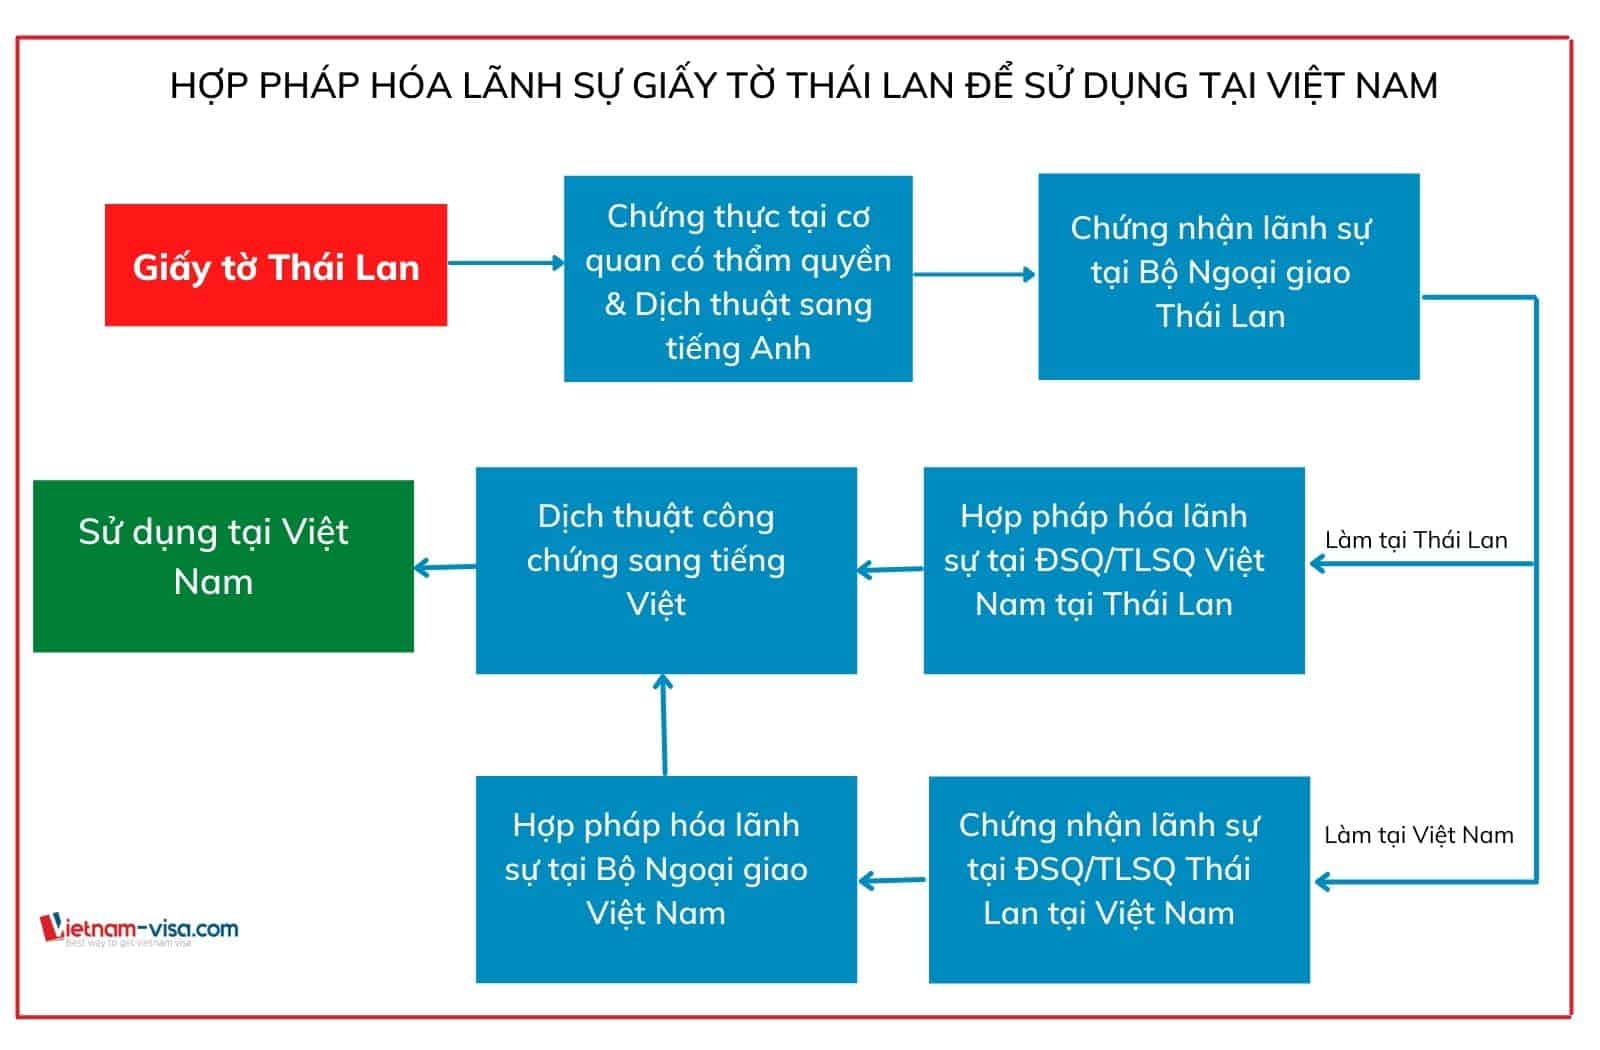 Thủ tục hợp pháp hóa lãnh sự giấy tờ Thái Lan để sử dụng tại Việt nam